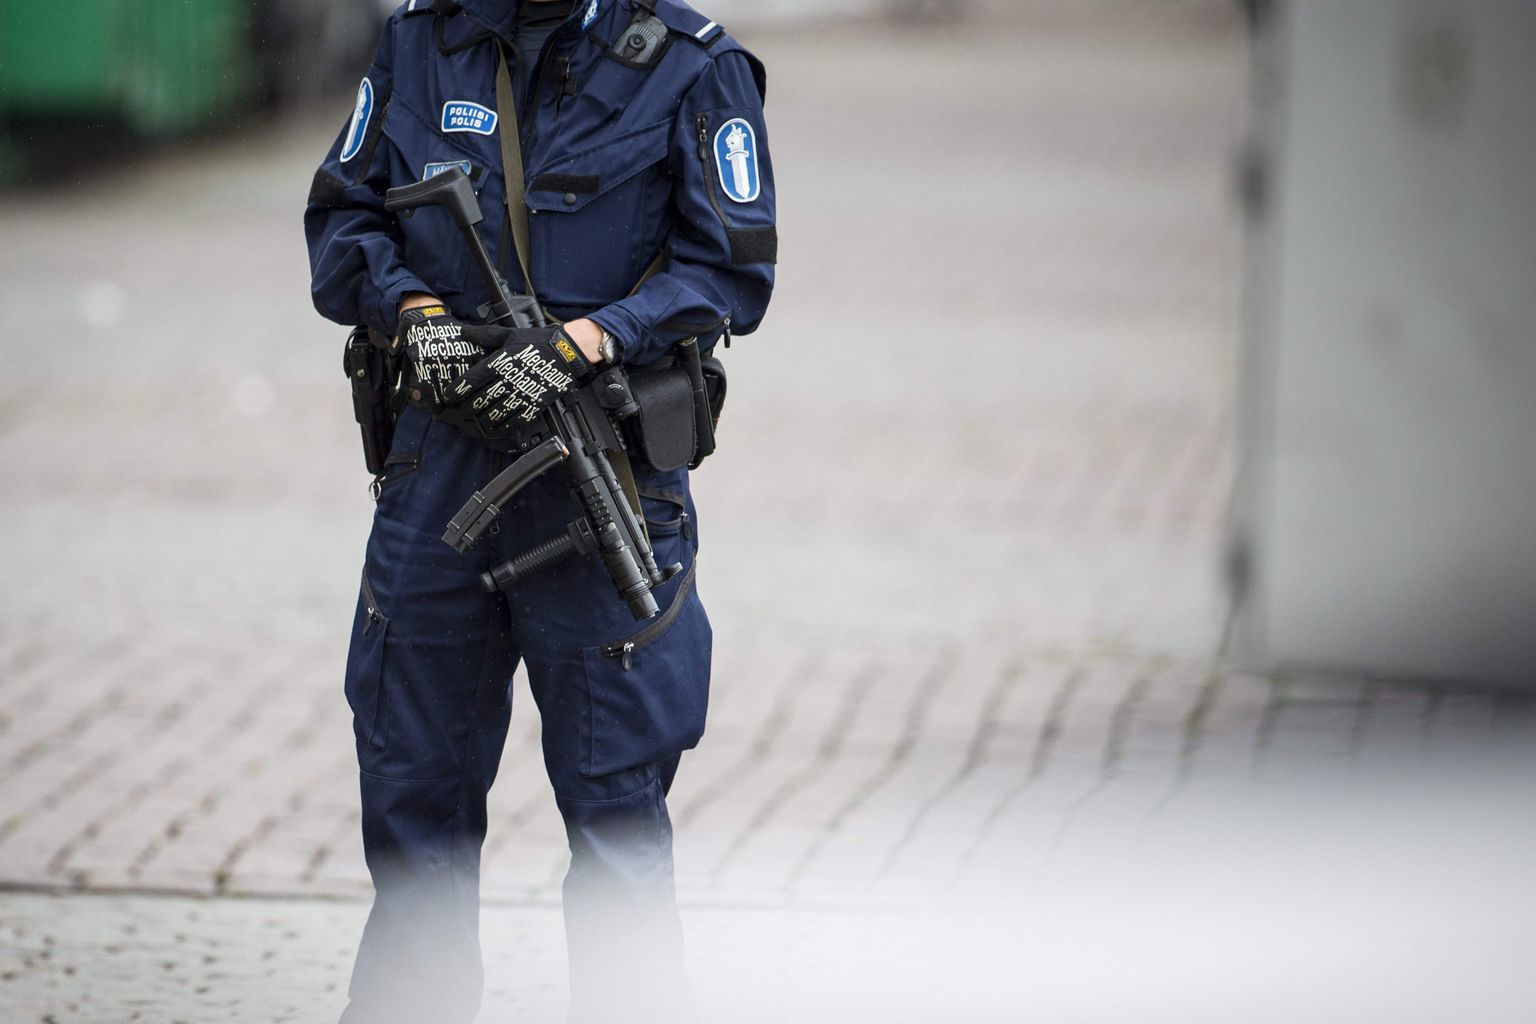 Soome politsei Turu turul peale 2017. aasta terrorirünnakut patrullimas püstolkuulipildujaga Heckler & Koch MP5.